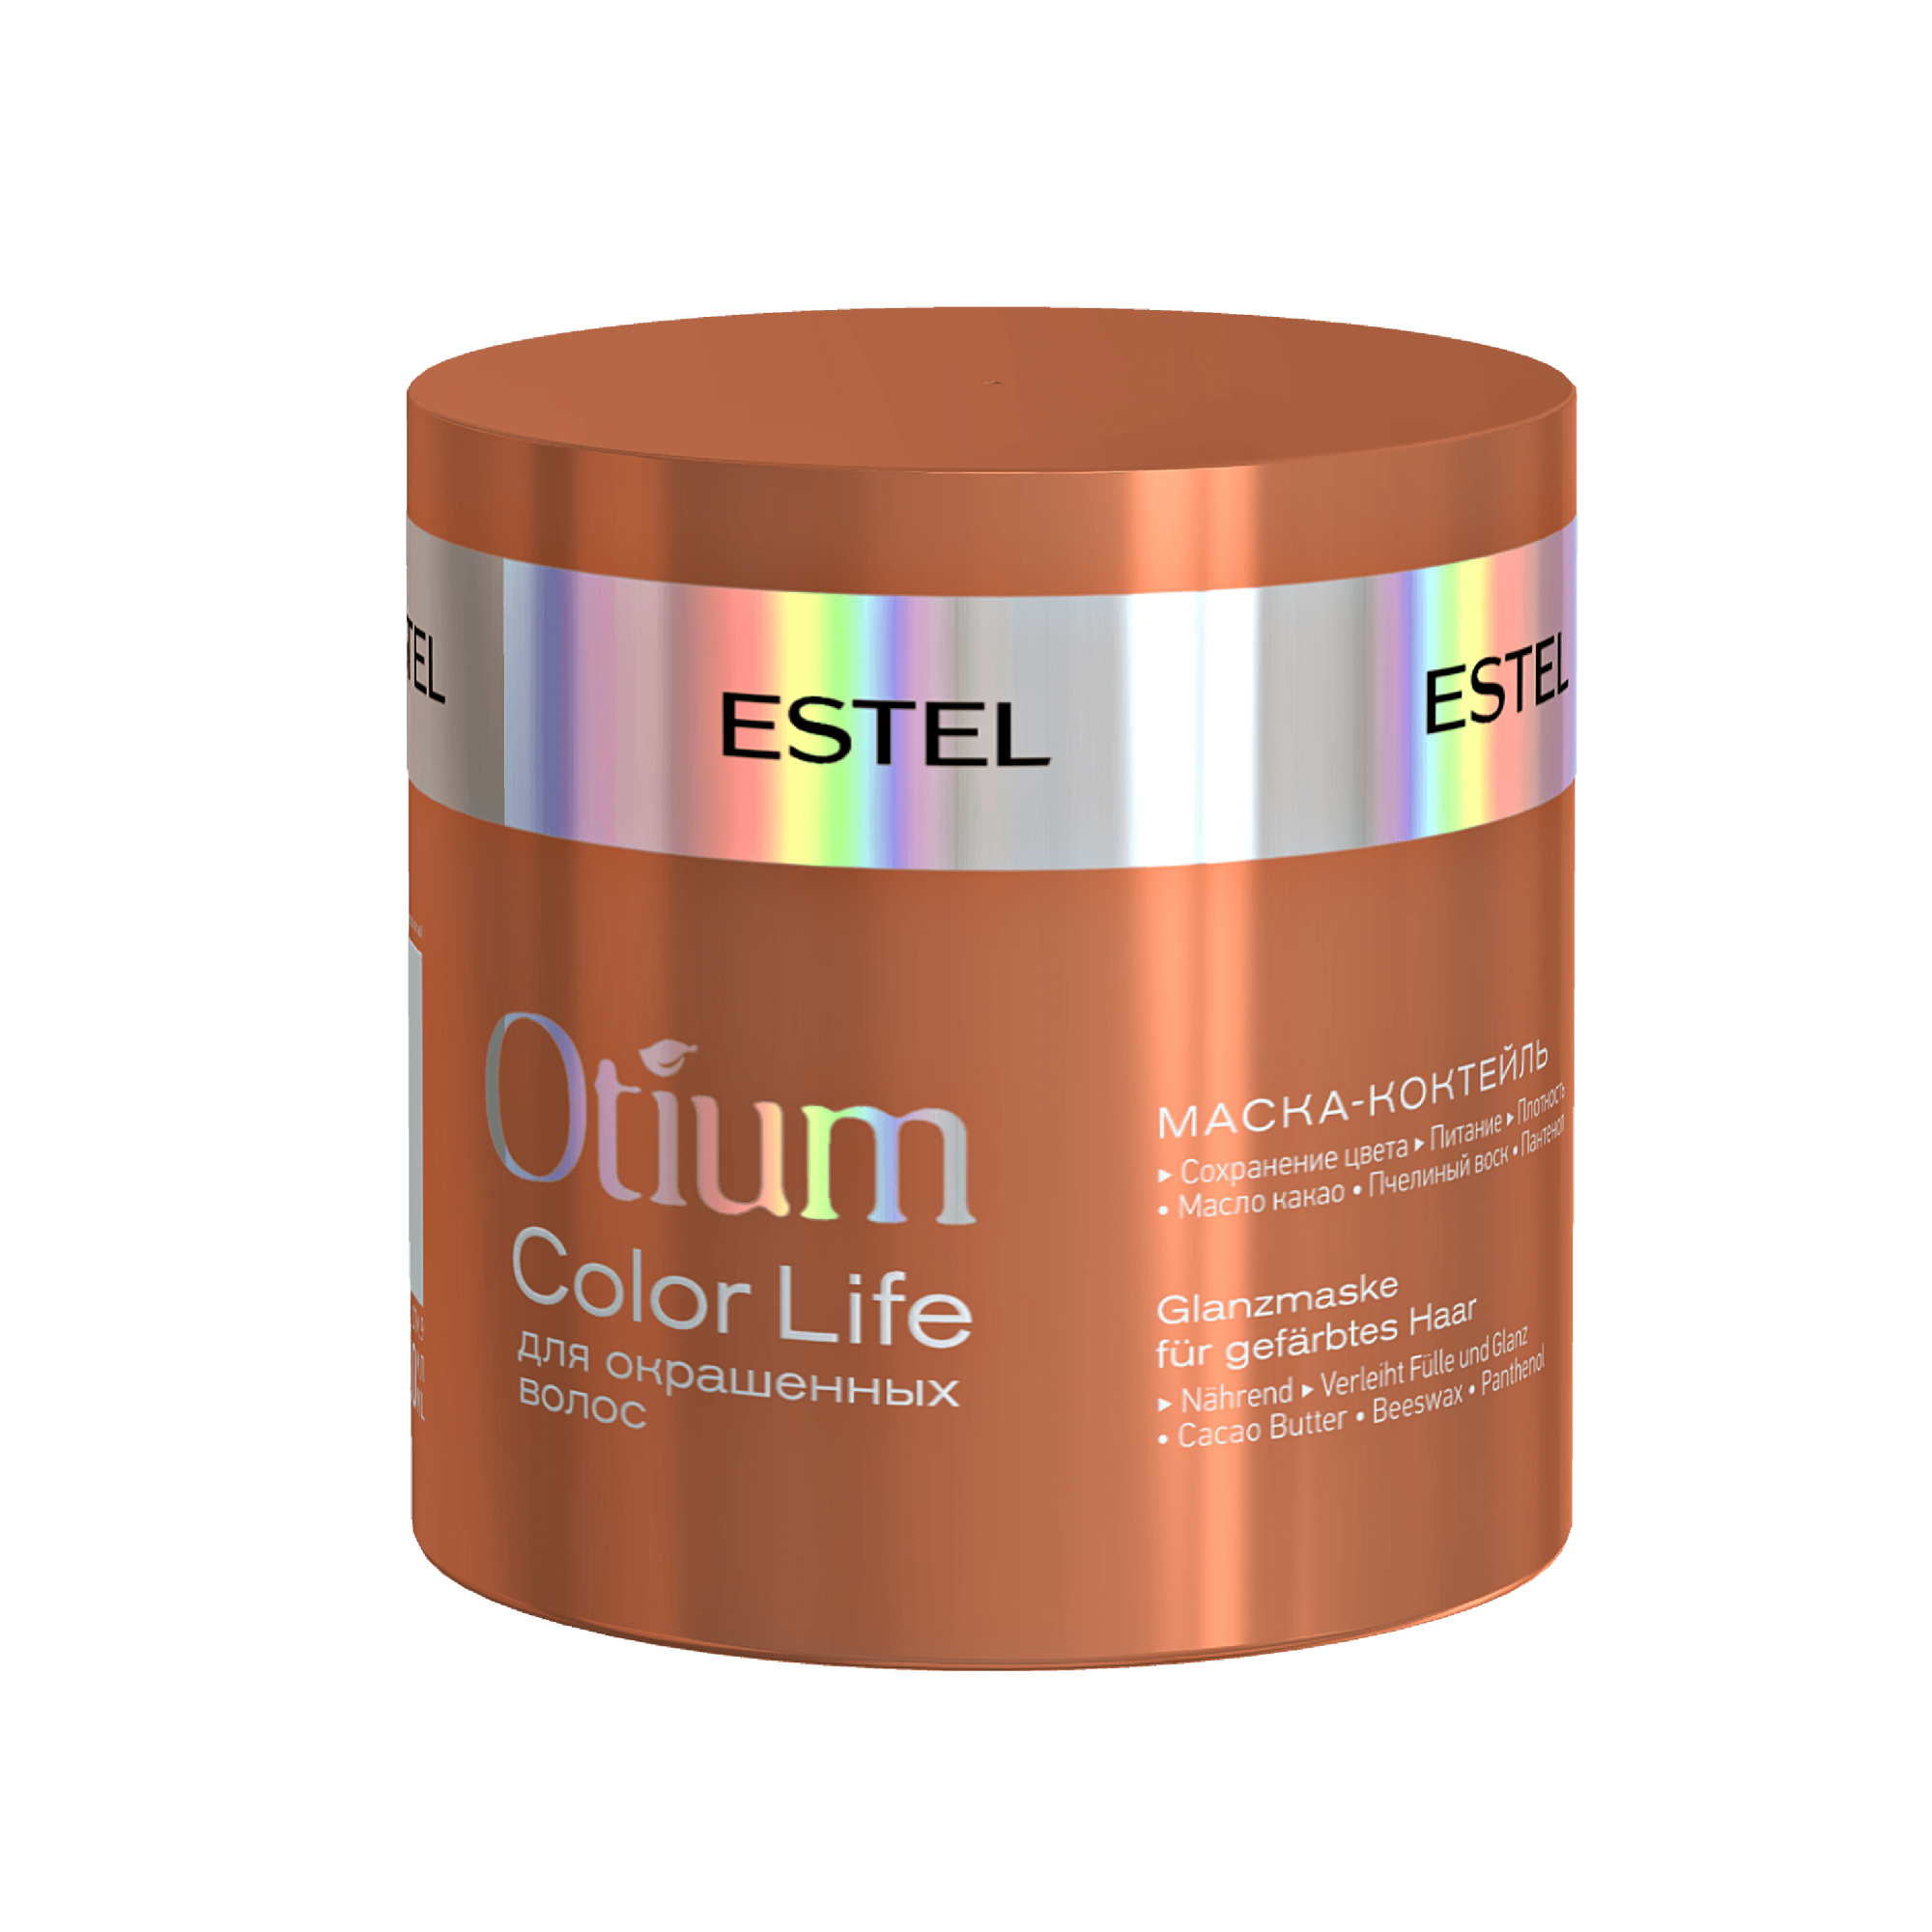 Маска для волос pro for wave. Estel Otium Color Life маска. Estel Otium Color Life. Маска-коктейль для окрашенных волос Otium Color Life, 300 мл. Estel Otium Color Life набор.